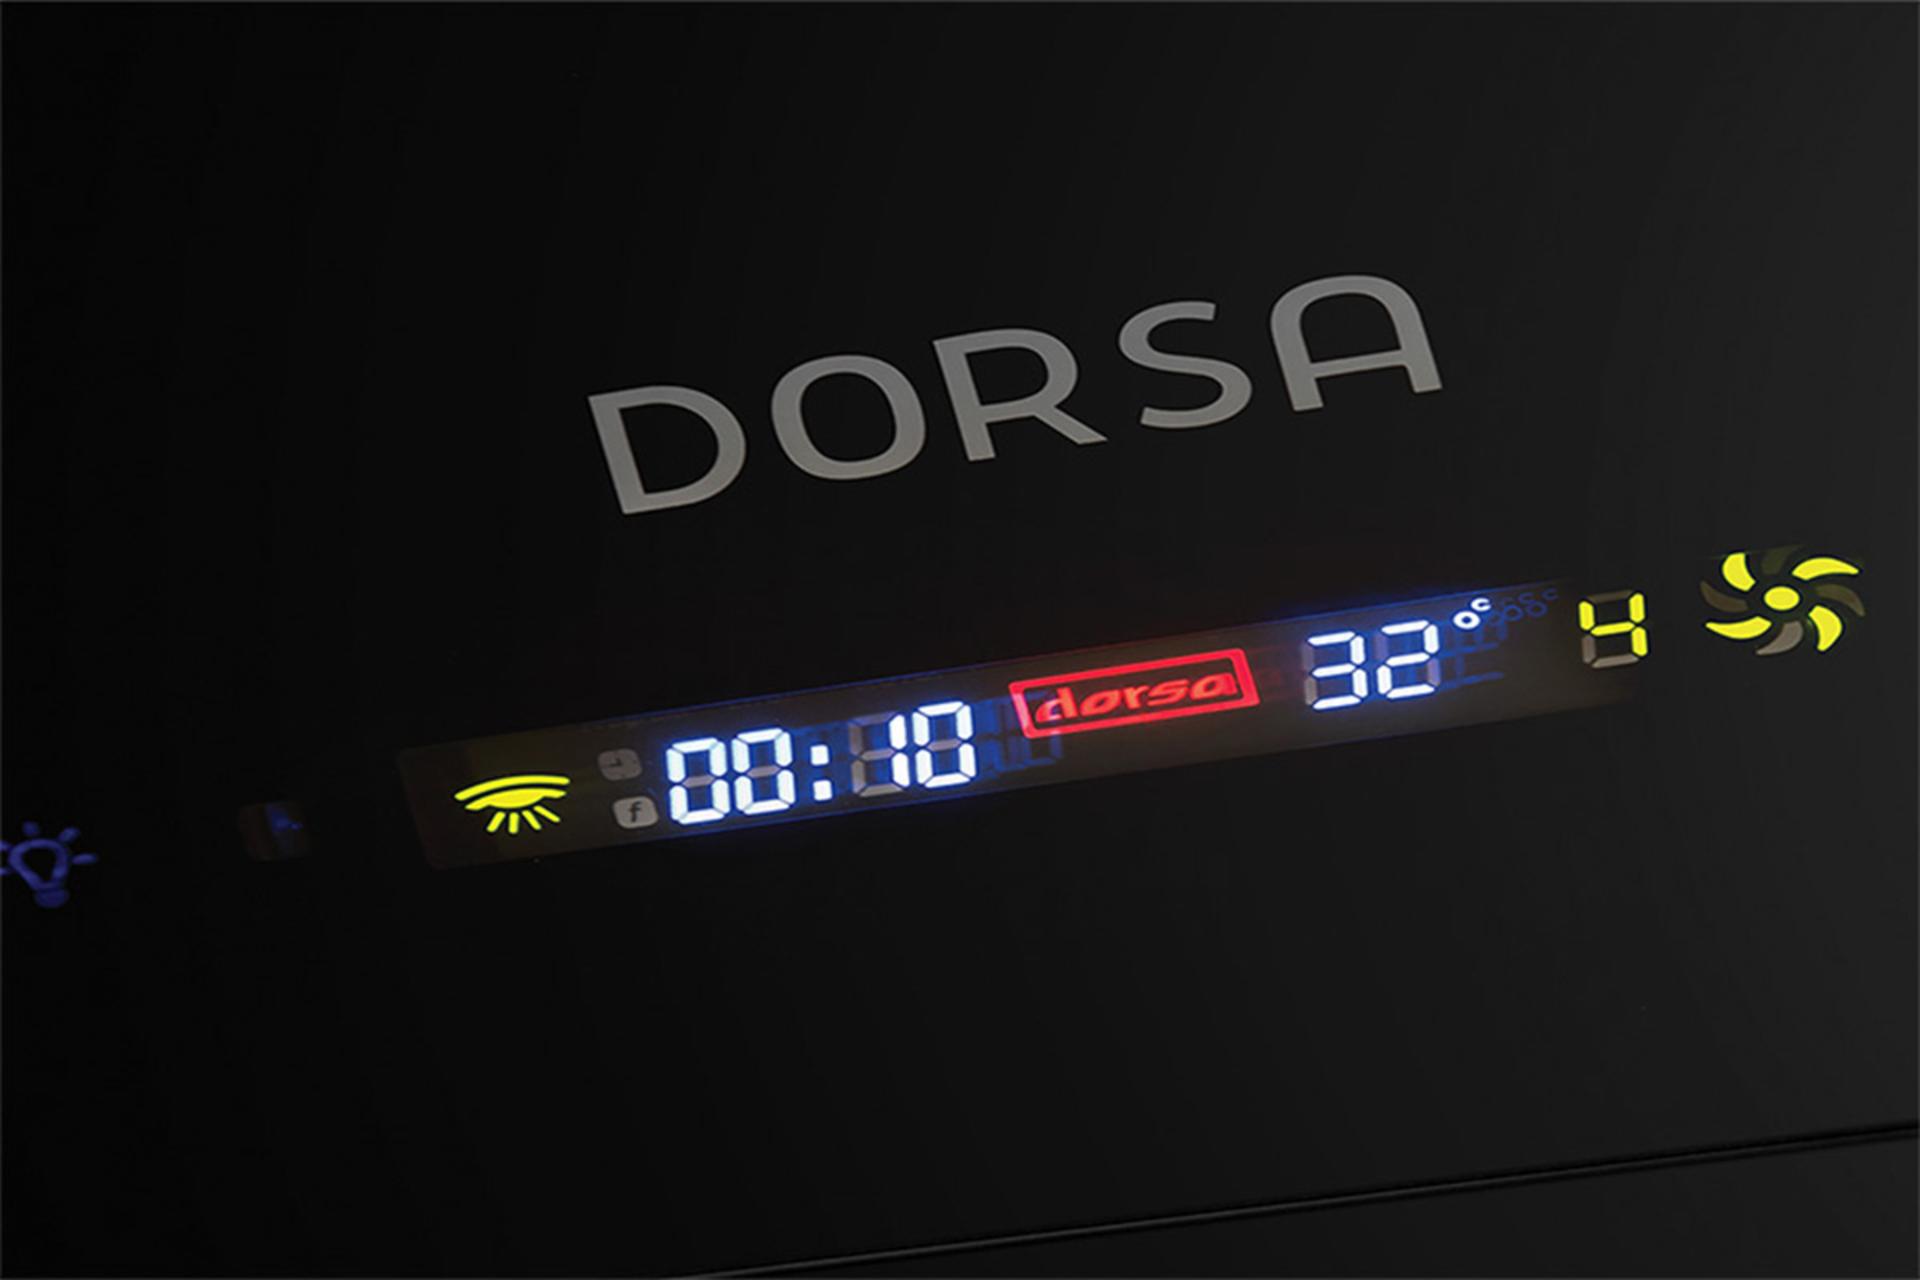 هود مورب درسا مدل dorsa-afra-90 نمای صفحه نمایش